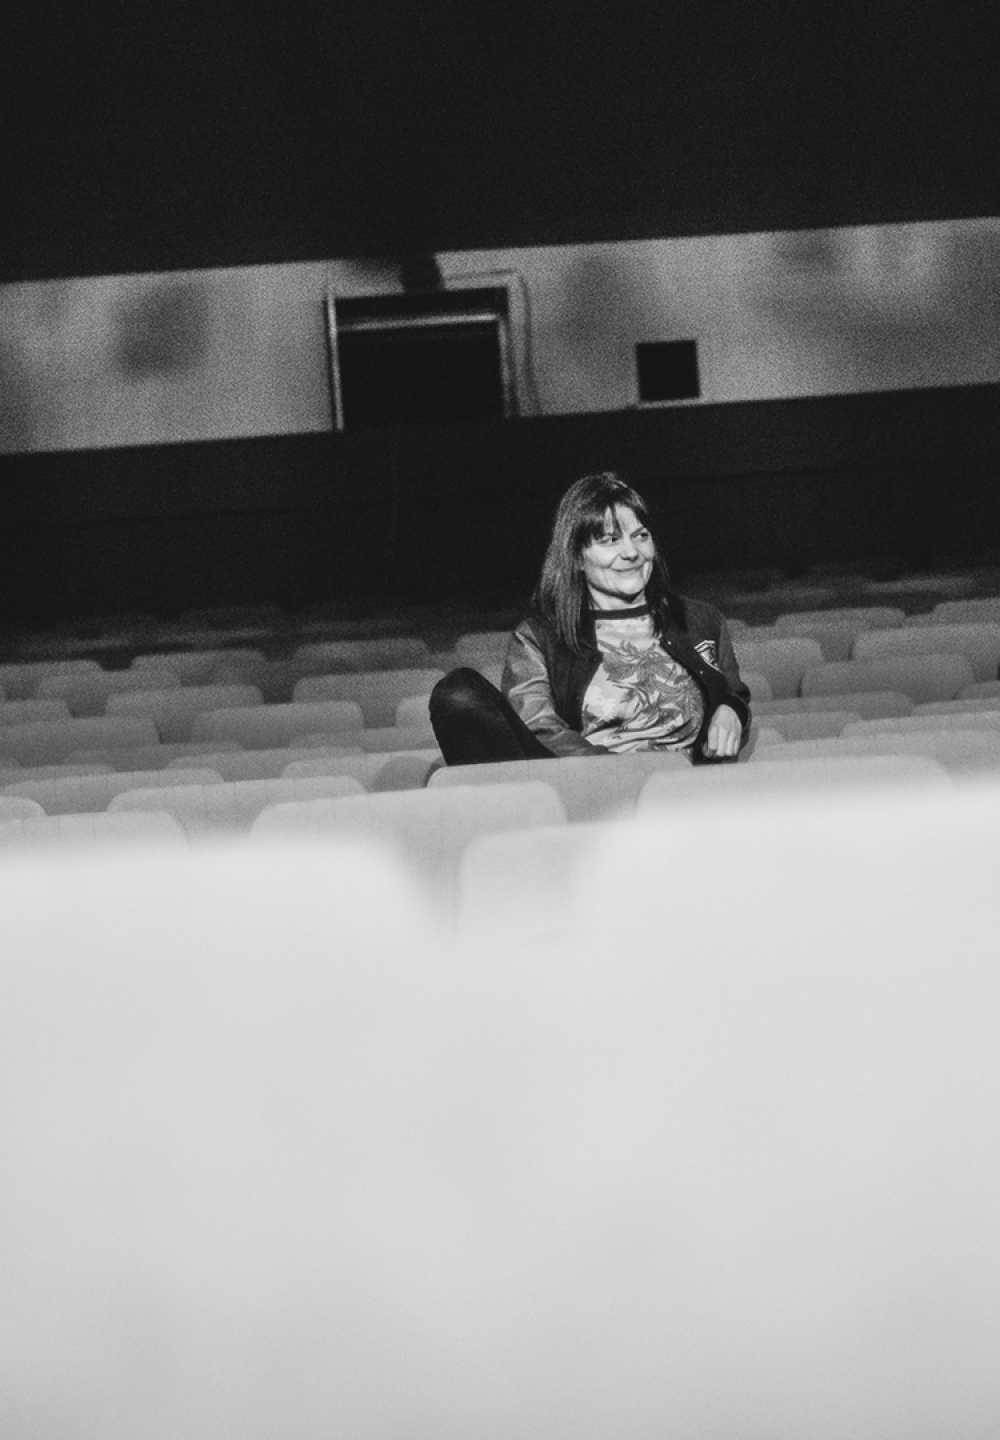 Na zdjęciu reżyserka Magdalena Miklasz. Czarno-biała fotografia. Kobieta siedzi w środku rzędu na widowni. Ma długie, ciemne włosy. Patrzy w prawo. Uśmiecha się. Za nią niewielkie okna z pokoju technicznego.